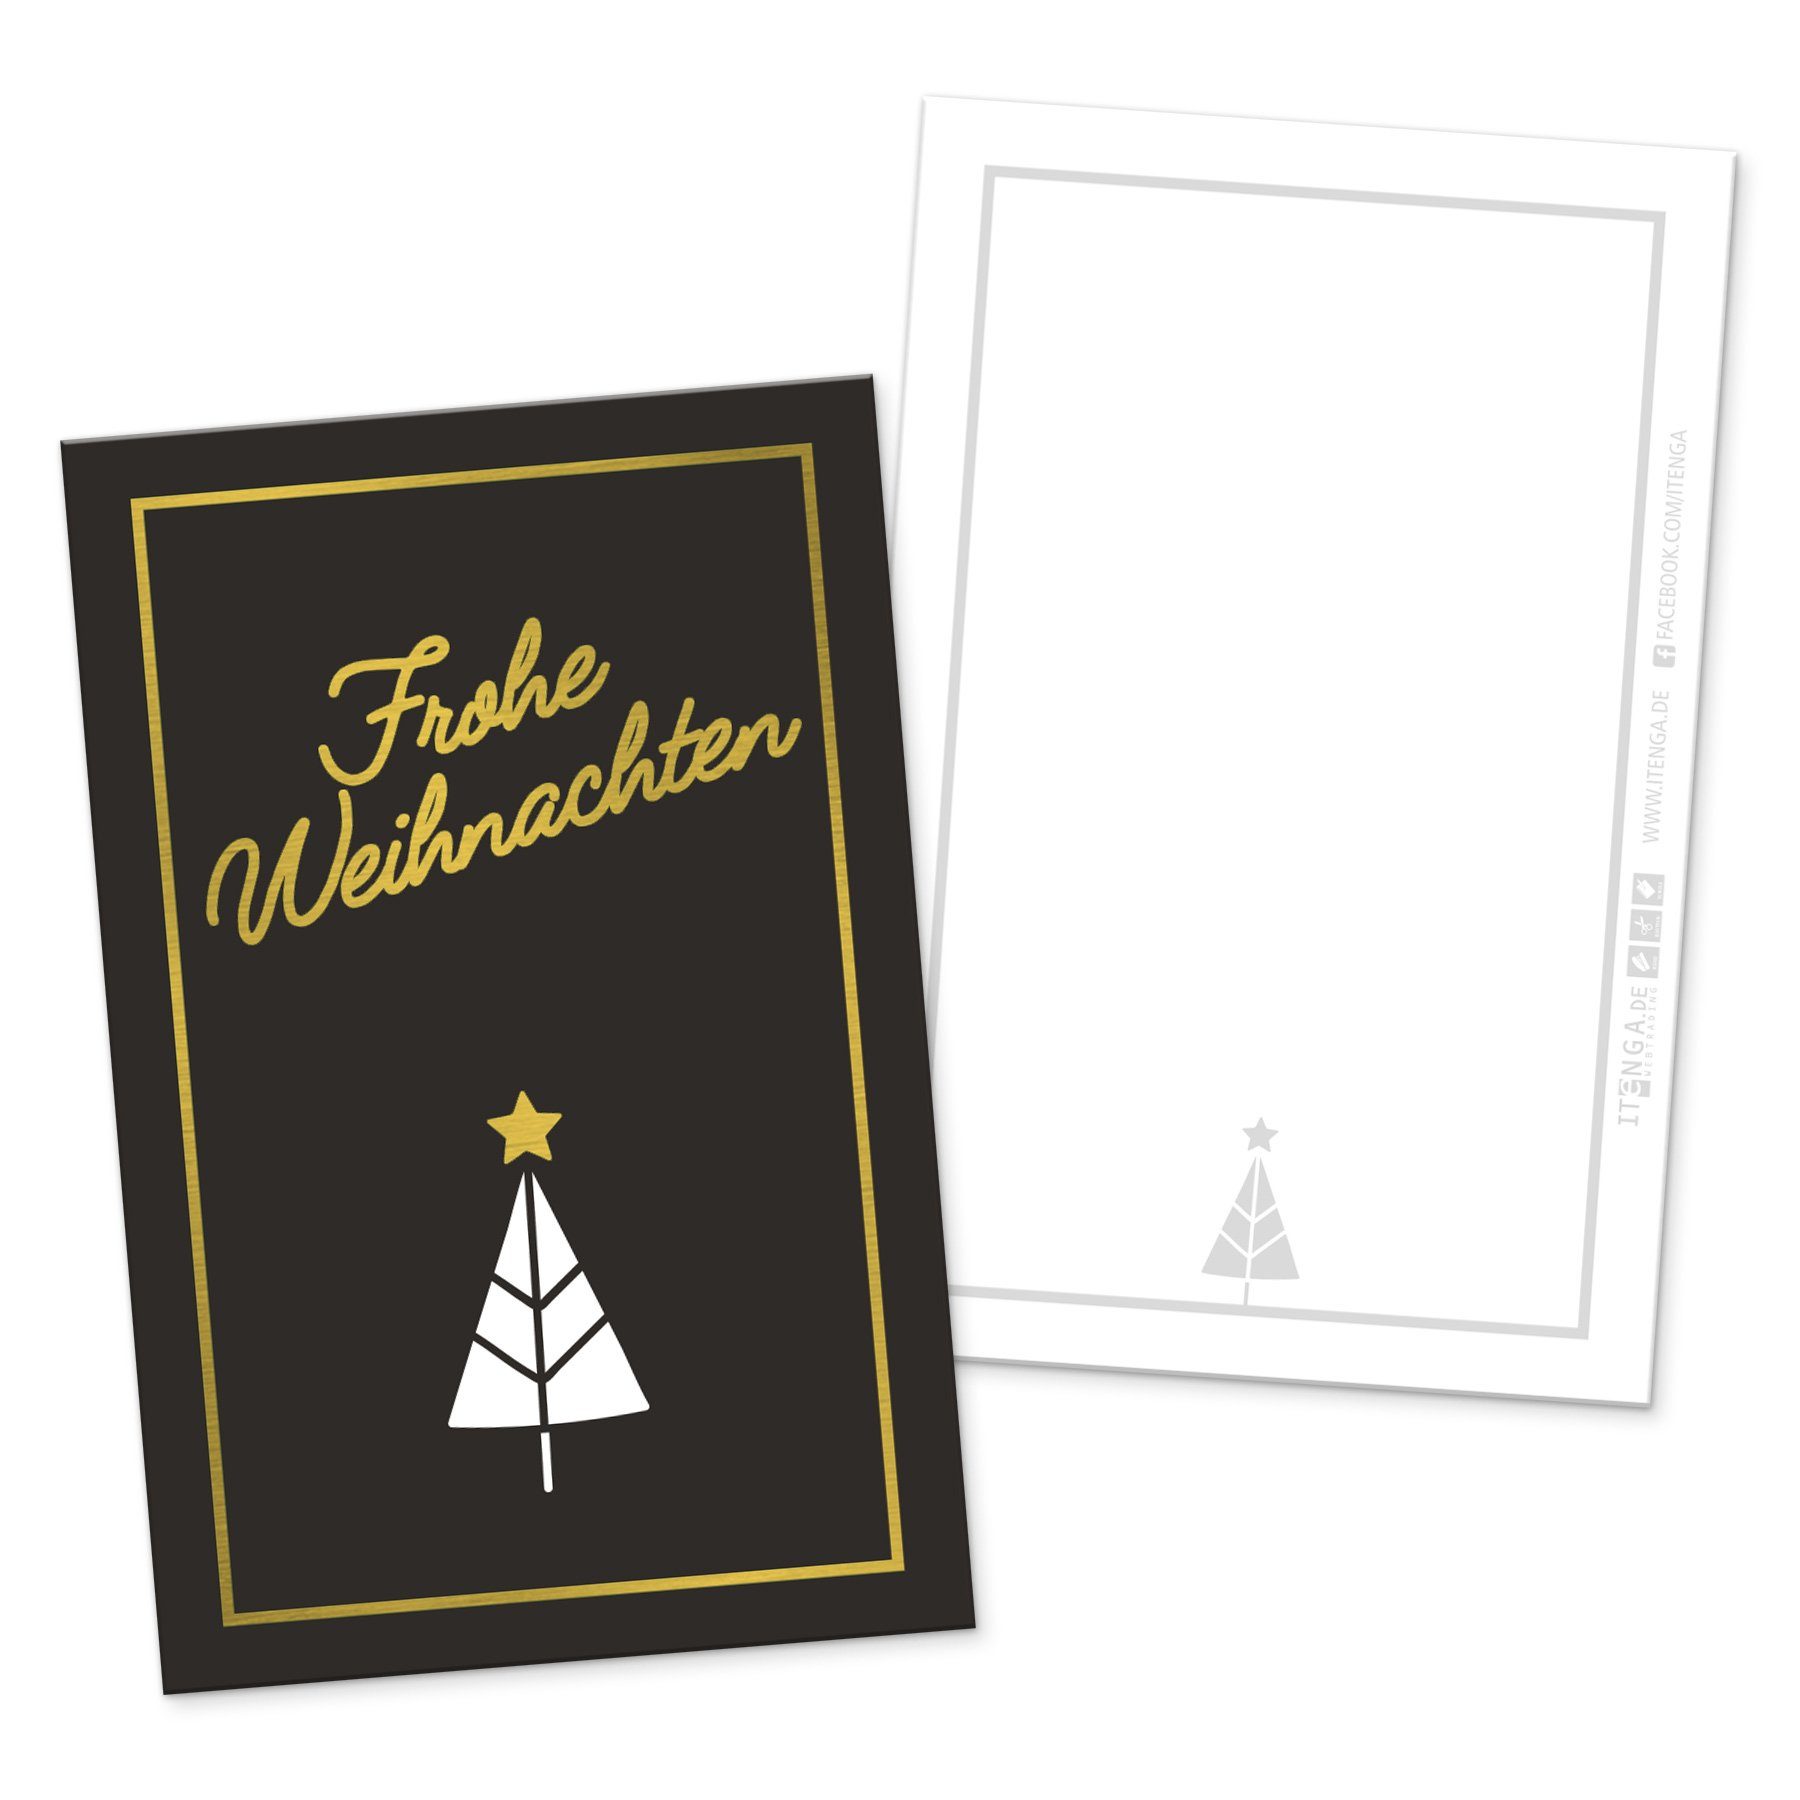 itenga Grußkarten itenga 24 x Geschenkekarten Frohe Weihnachten schwarz weiß gold in Vis